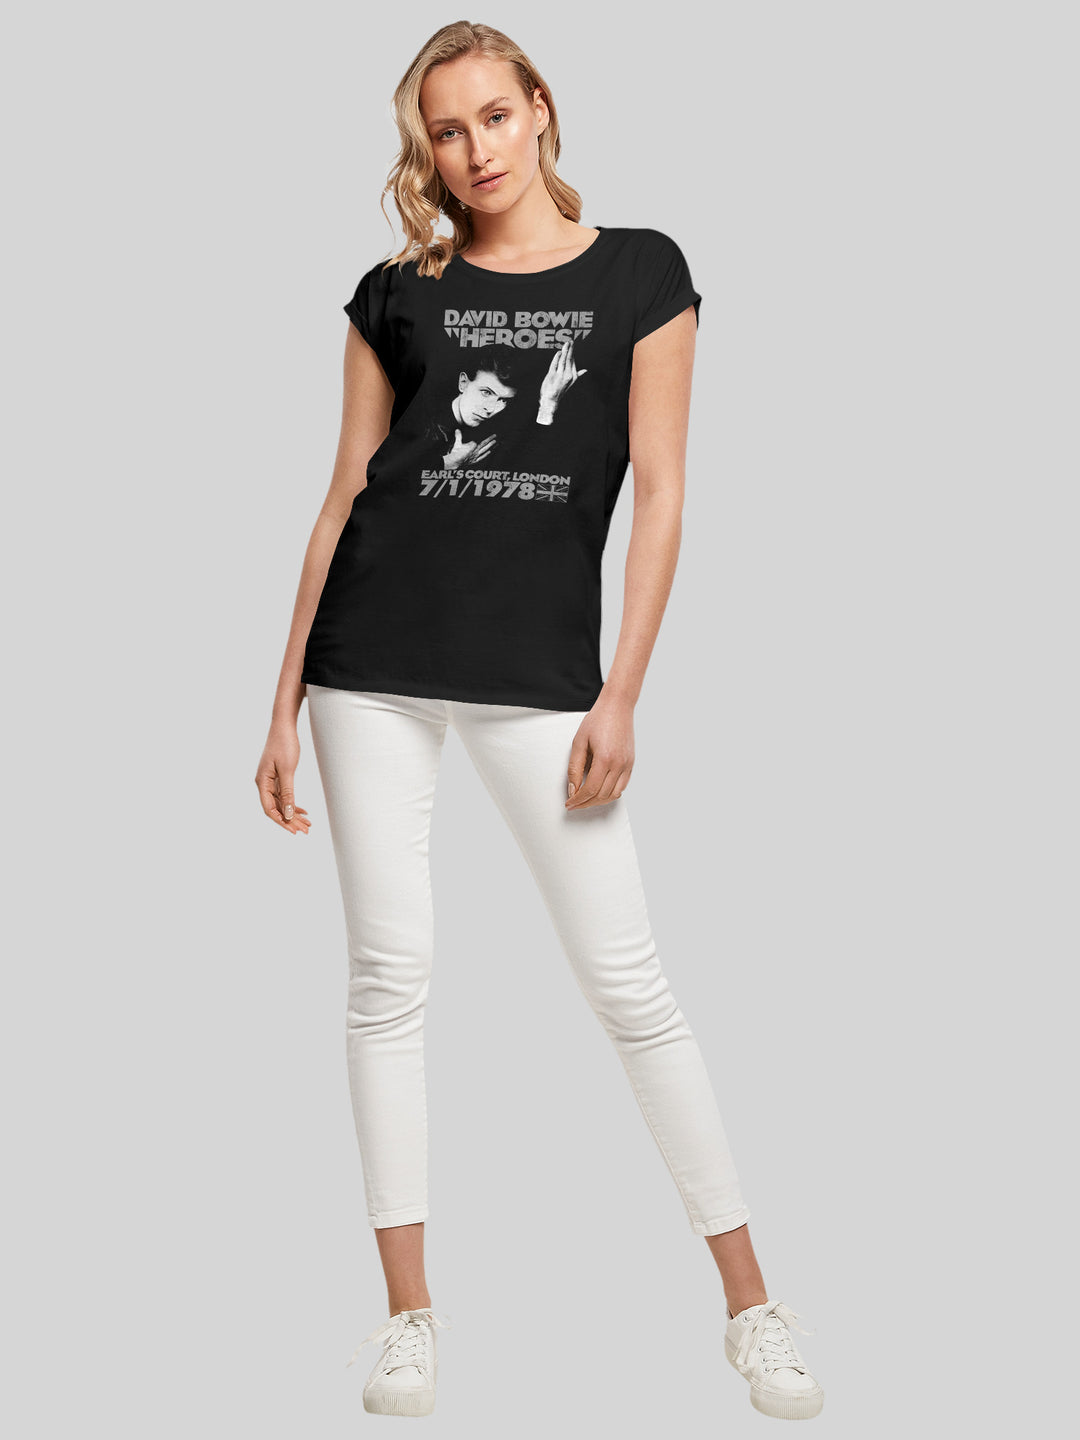 David Bowie T-Shirt | Earls Court Heroes | Premium Short Sleeve Ladies Tee